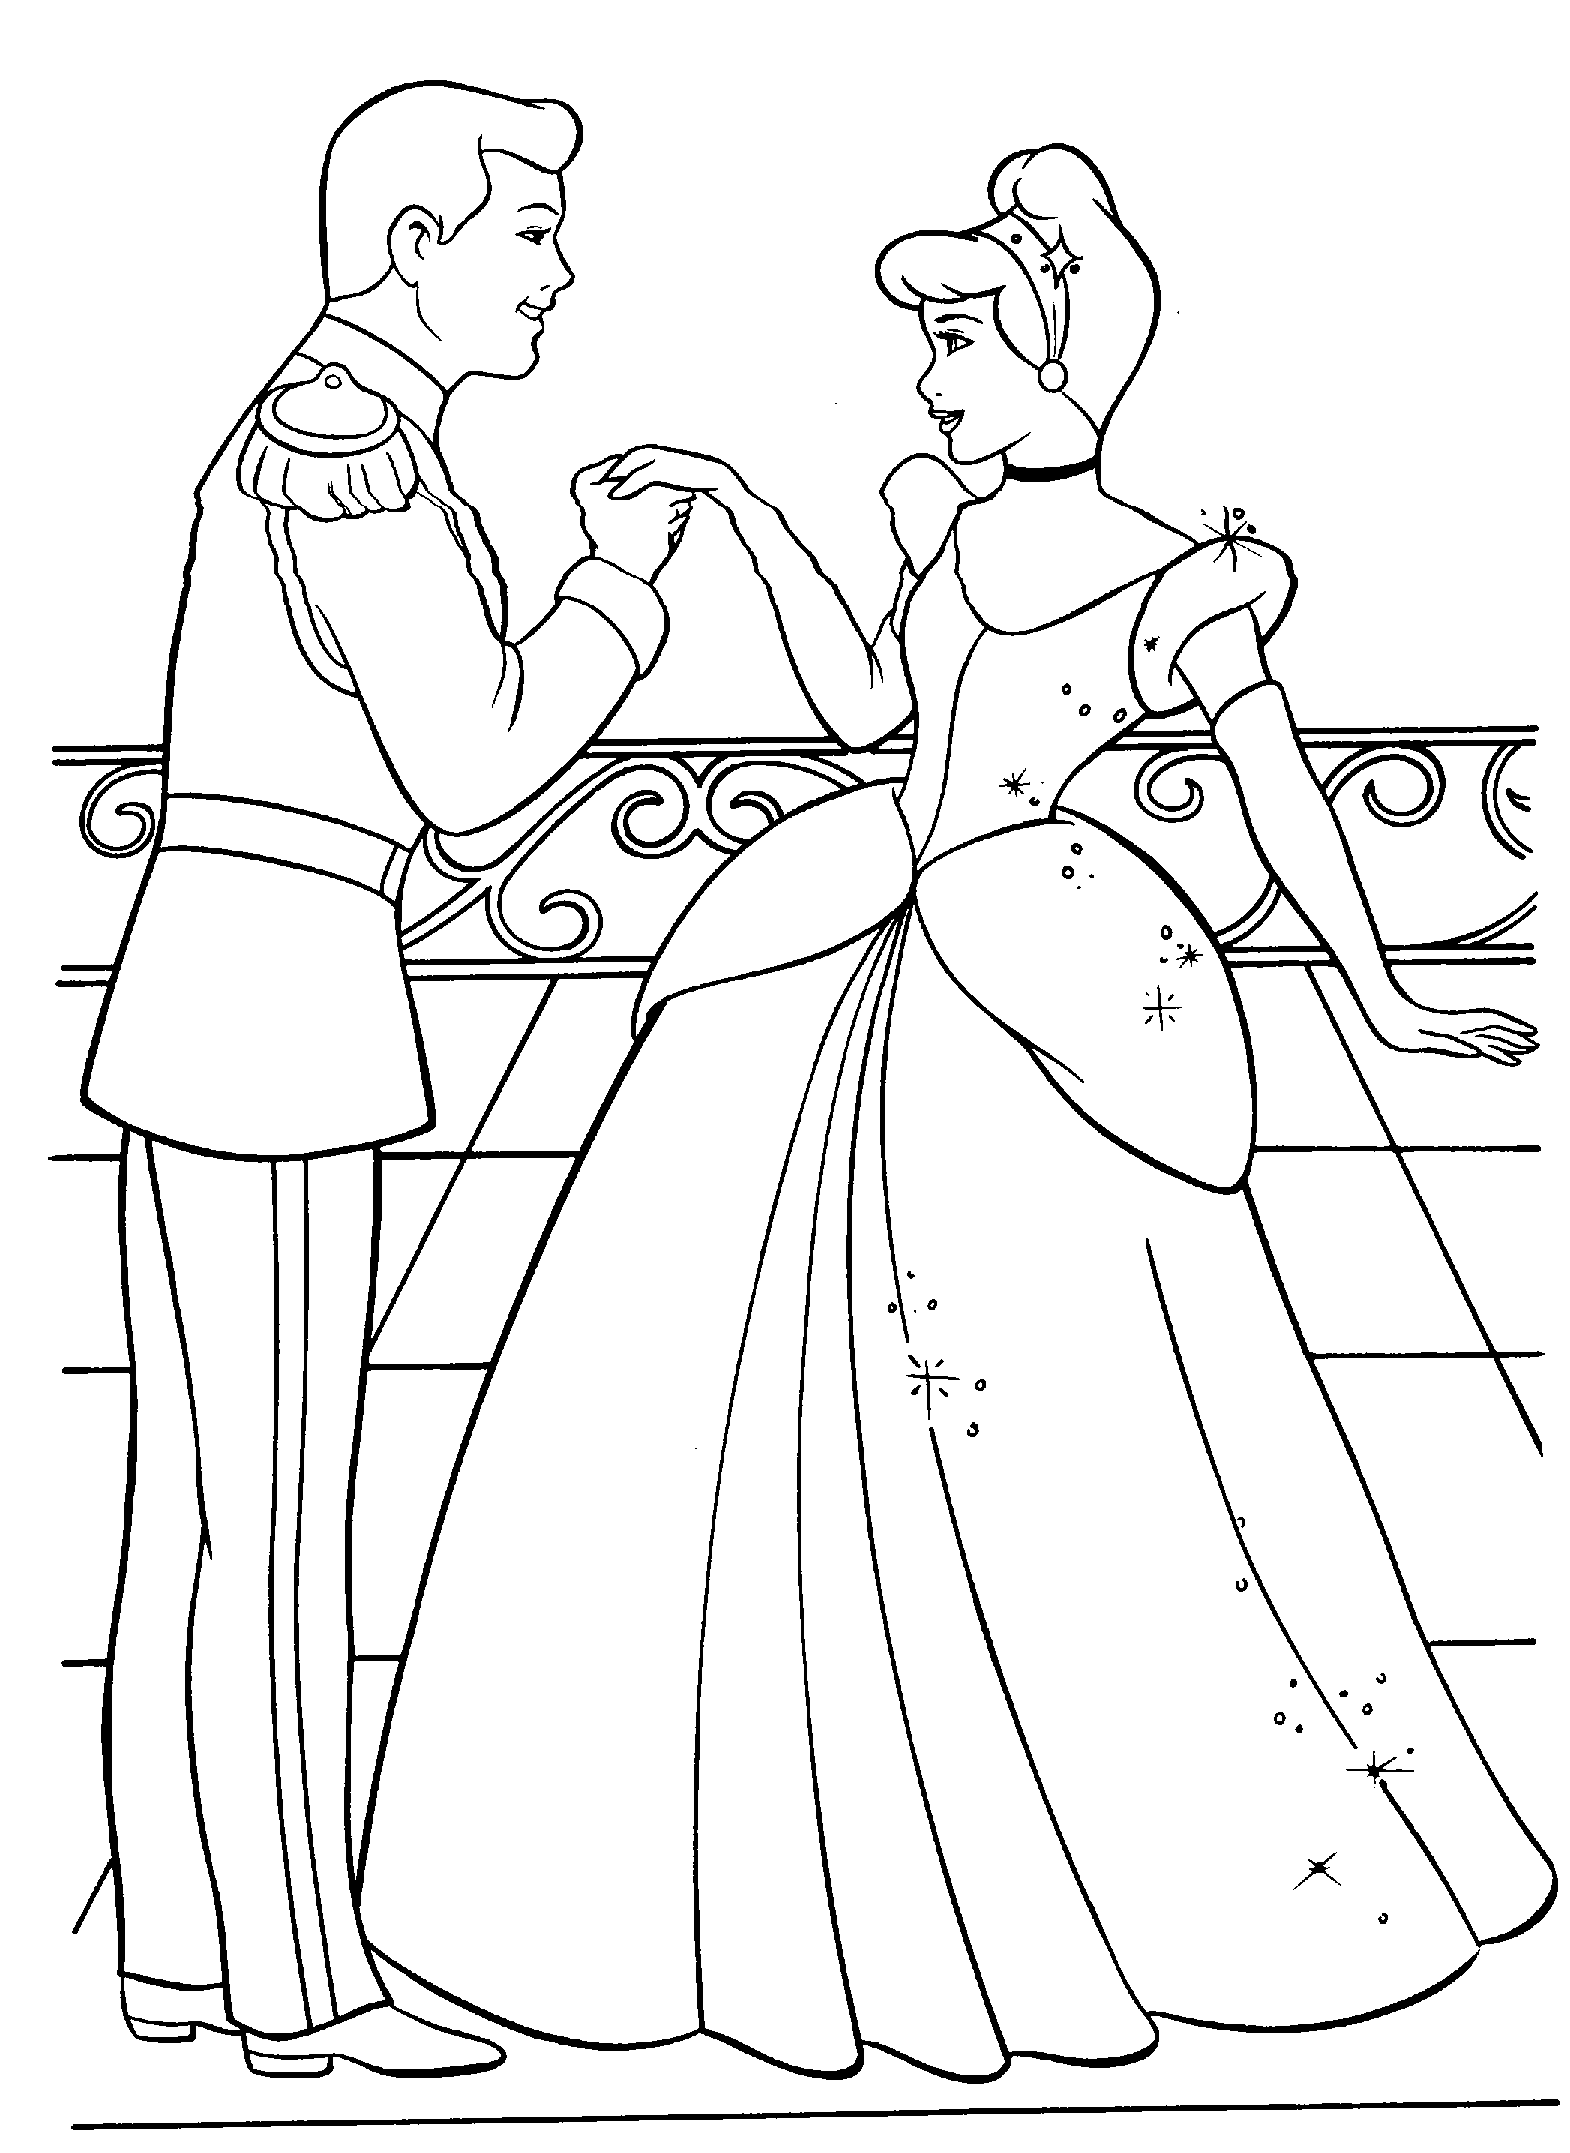 The Prince Ask Cinderella to Dance Coloring Page | Cinderella ...